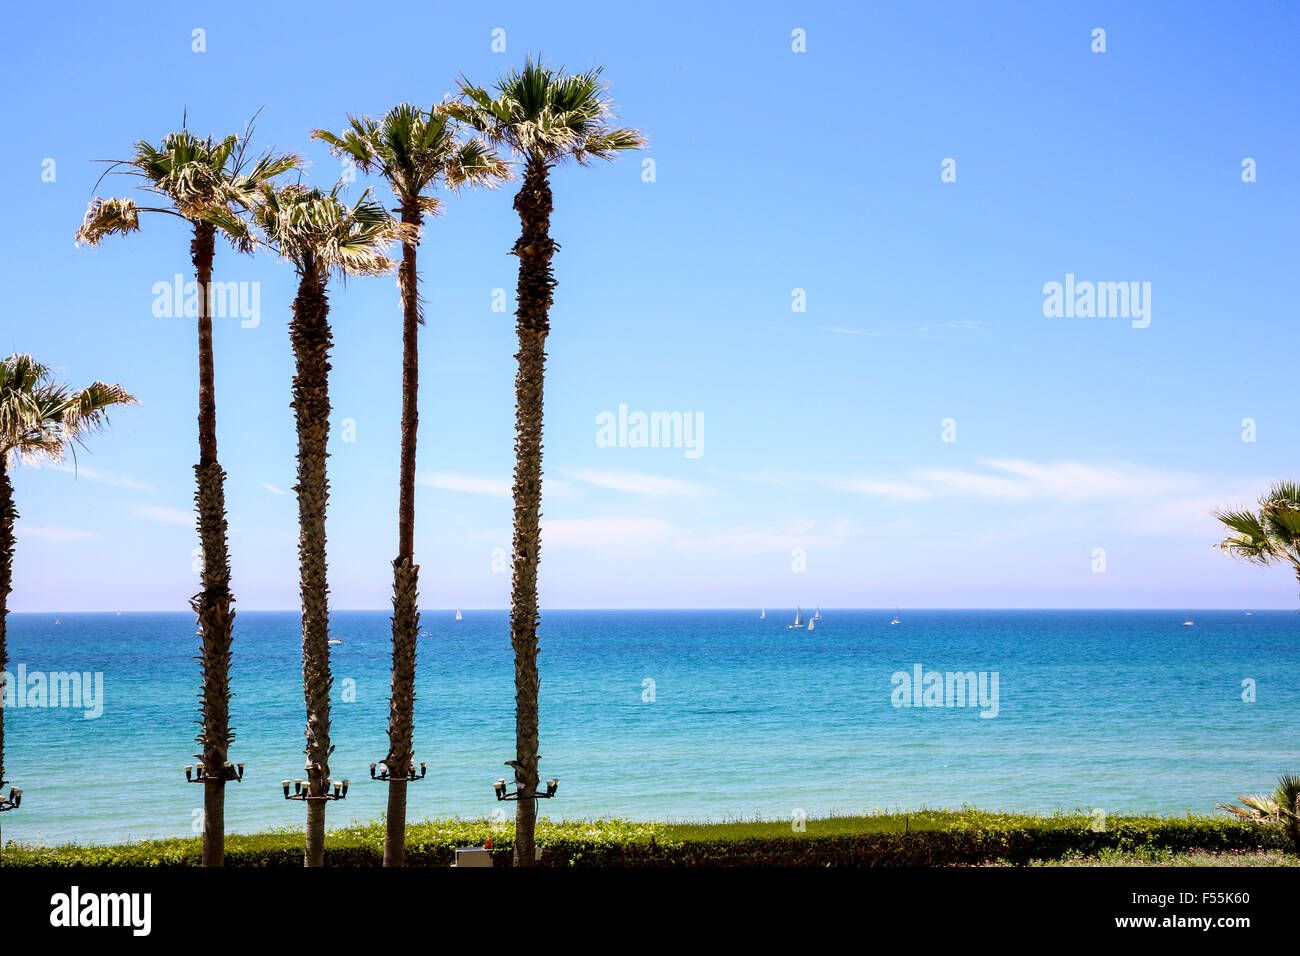 Palmiers sur une plage. Photographié sur le rivage méditerranéen, Herzliya, Israël Banque D'Images